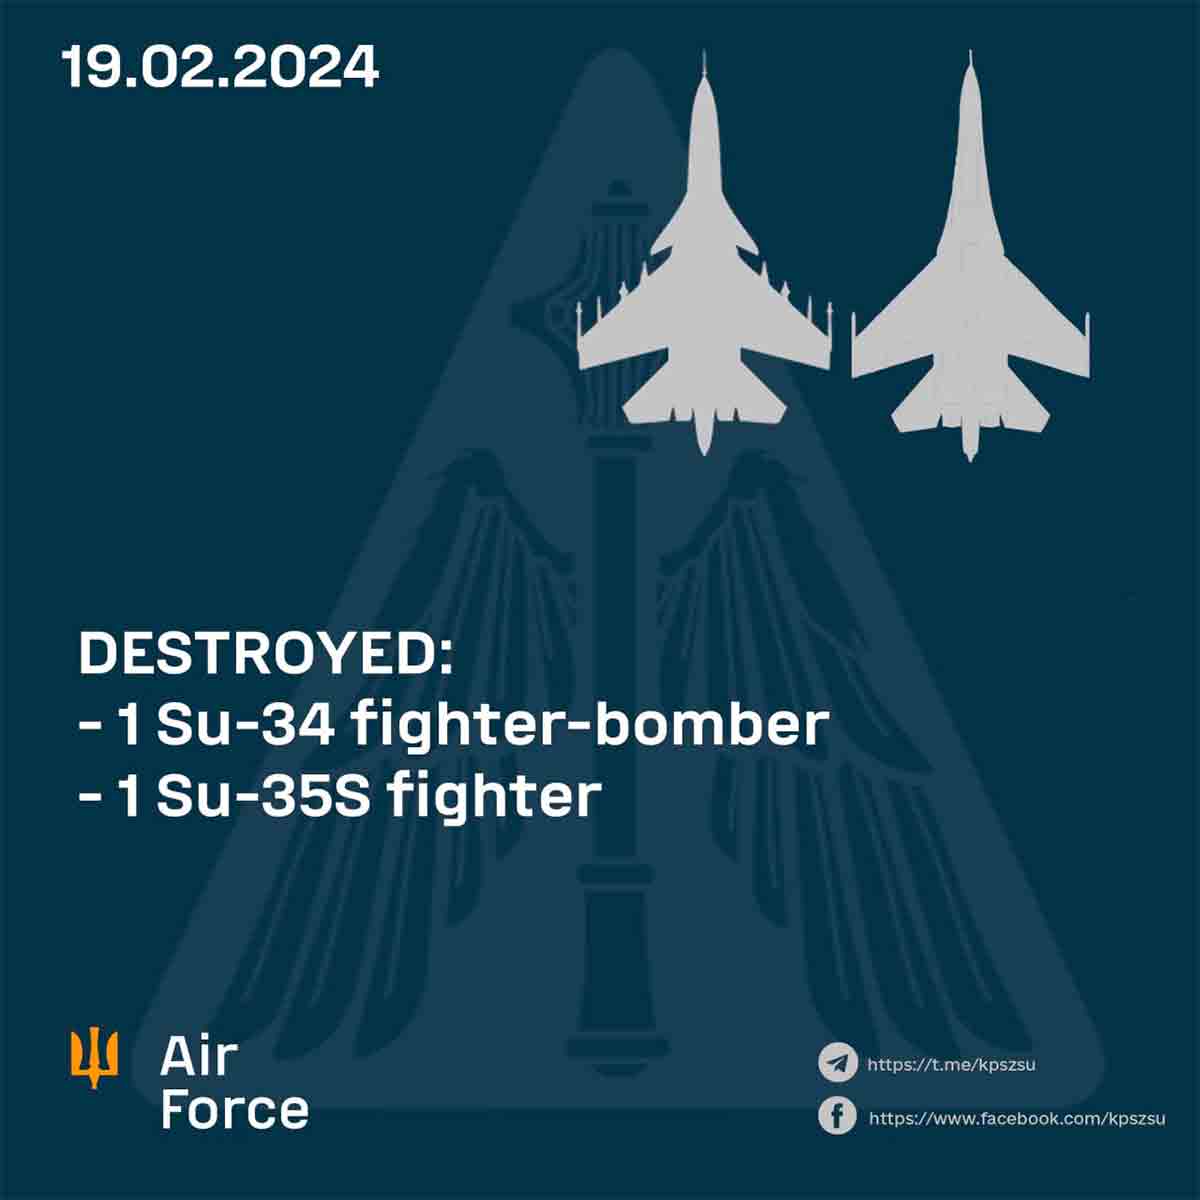 Det ukrainske luftvåben annoncerer nedskydning af yderligere to russiske jagerfly, hvilket bringer totalen op på 6 fly på tre dage